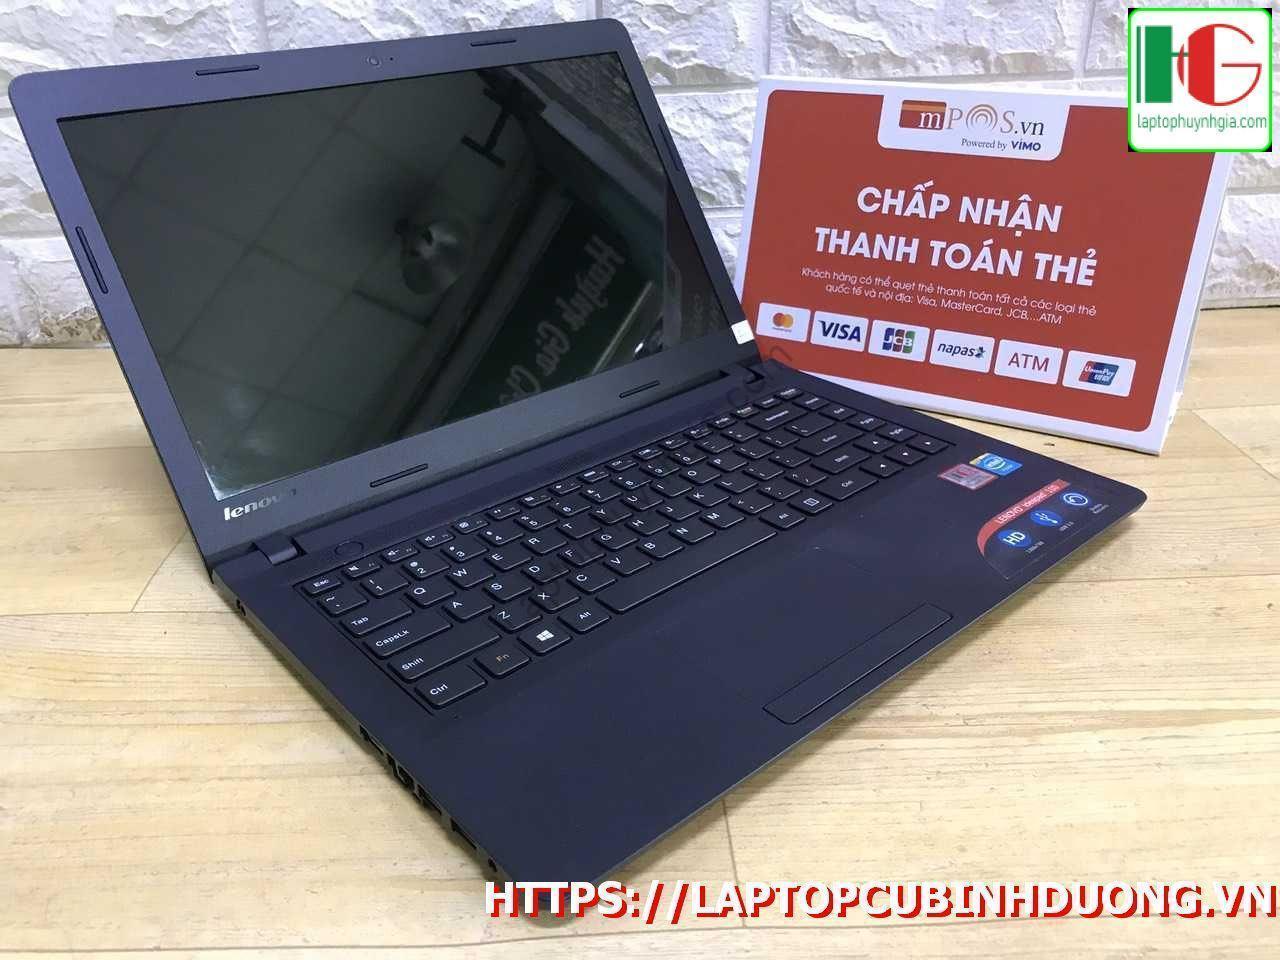 Lenovo Ipdead N2840 4g 500g Laptopcubinhduong.vn 1 [kích Thước Gốc] Result